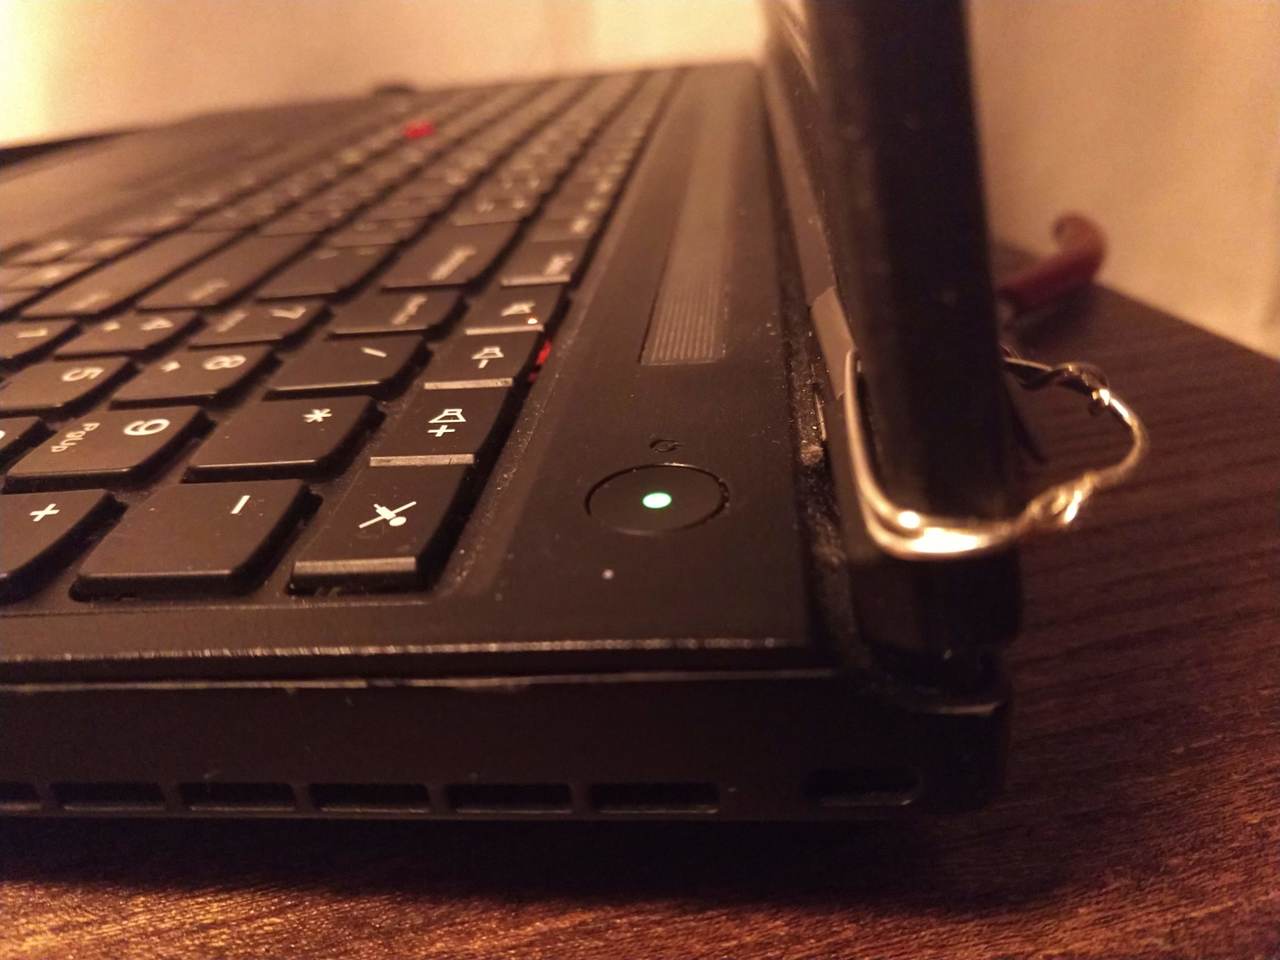 wire sloppily put around ThinkPad hinge